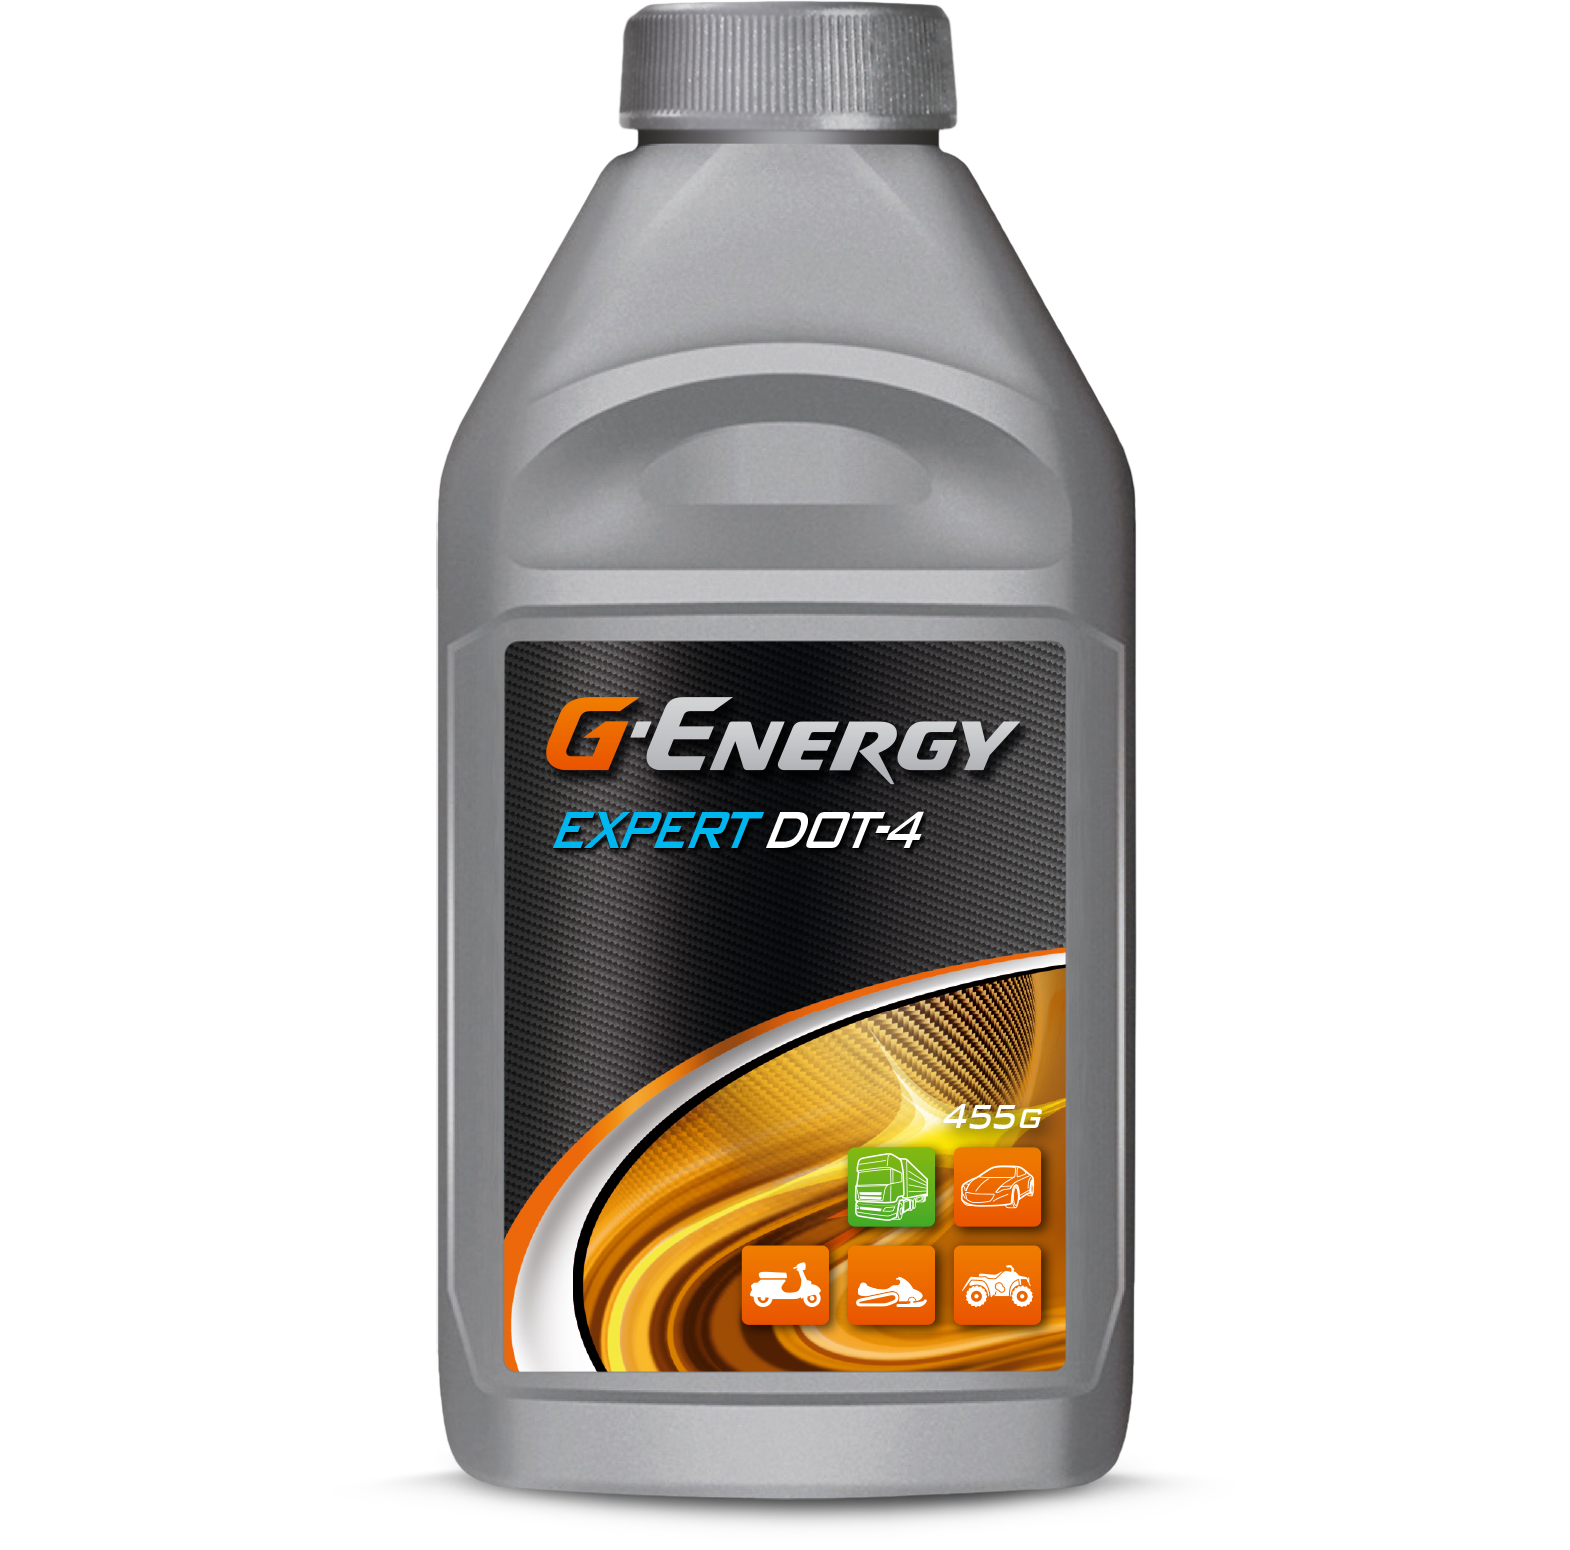 Тормозная жидкость G-Energy Expert DOT-4. Фото №2